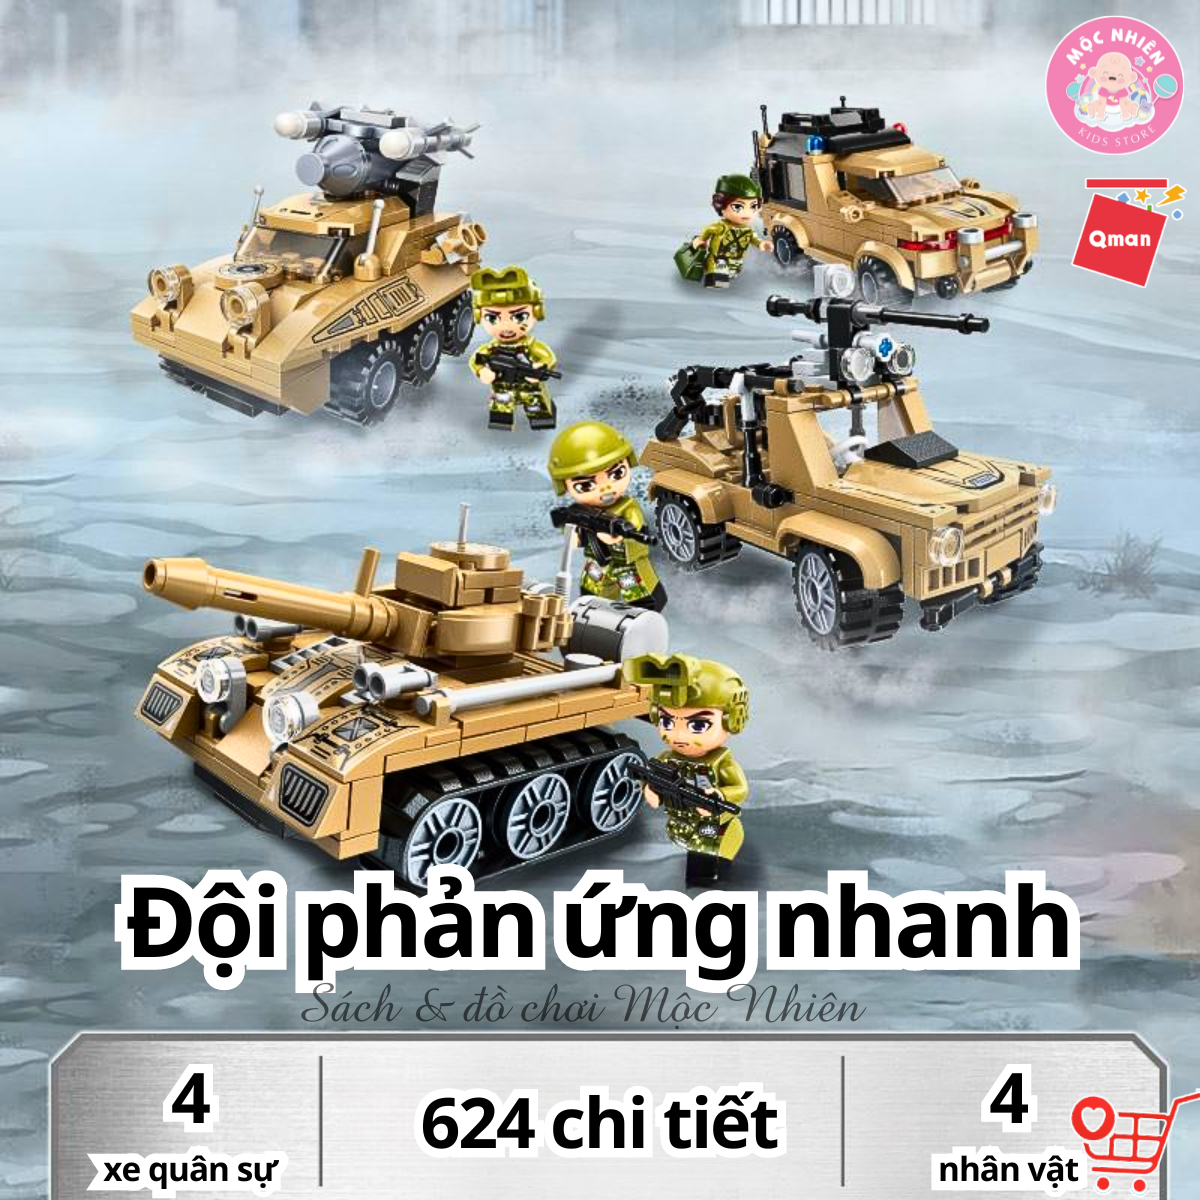 Đồ chơi lắp ráp xếp hình xe chiến đấu Qman 22011: Đội phản ứng nhanh (624 mảnh ghép) dành cho bé trên 6 tuổi